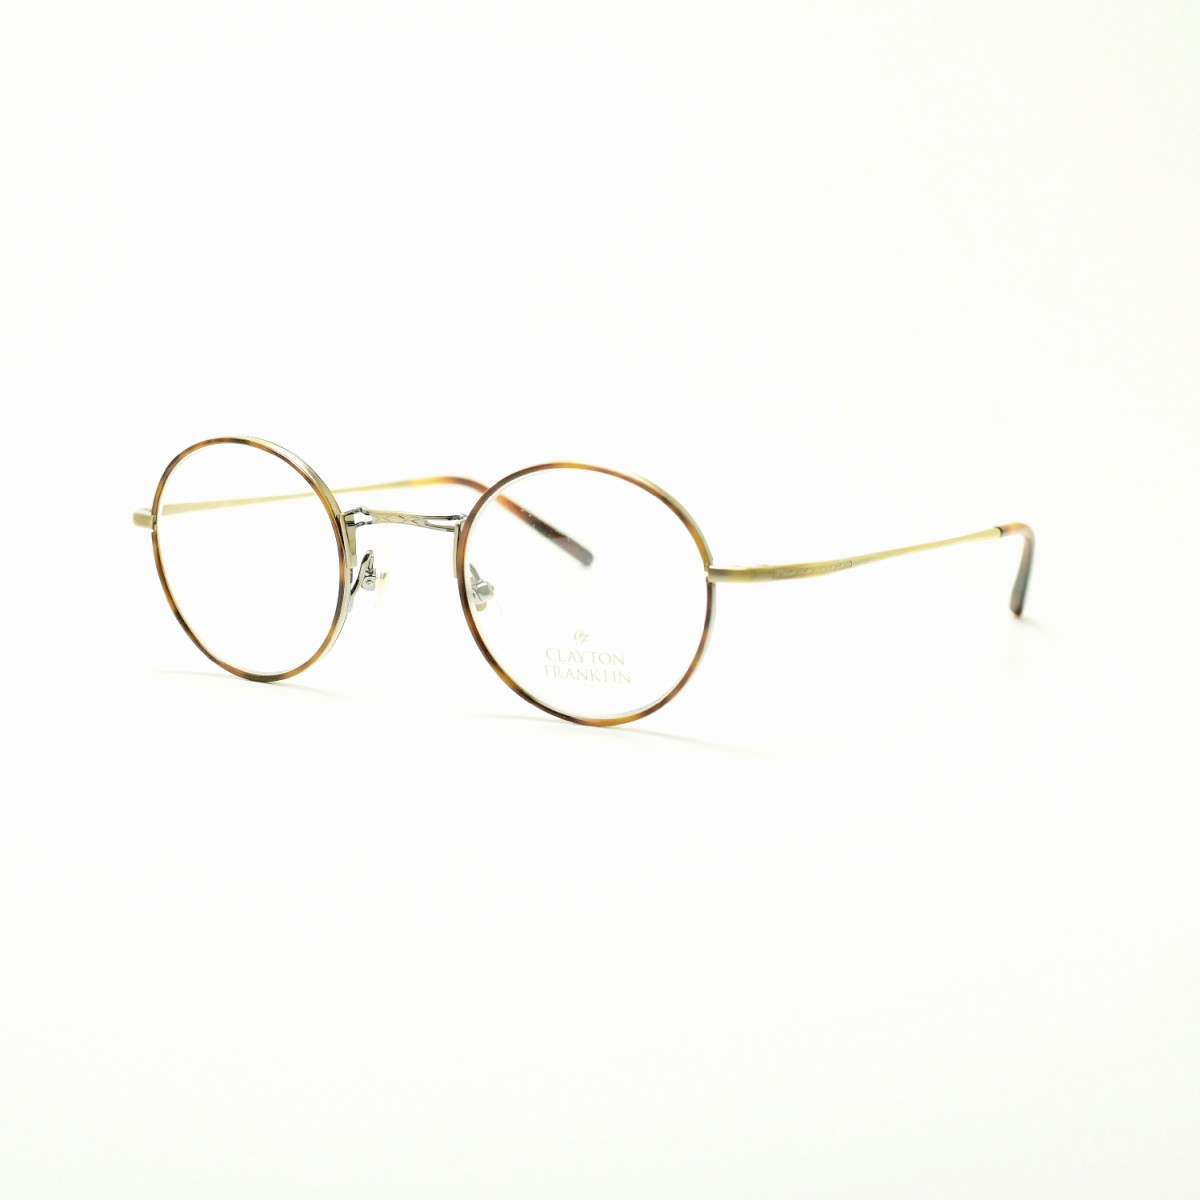 Clayton Franklin クレイトンフランクリン 636 Agp アンティークゴールド デモレンズ メガネ 眼鏡 めがね メンズ レディース おしゃれ ブランド 人気 おすすめ フレーム 流行り 度付き レンズ